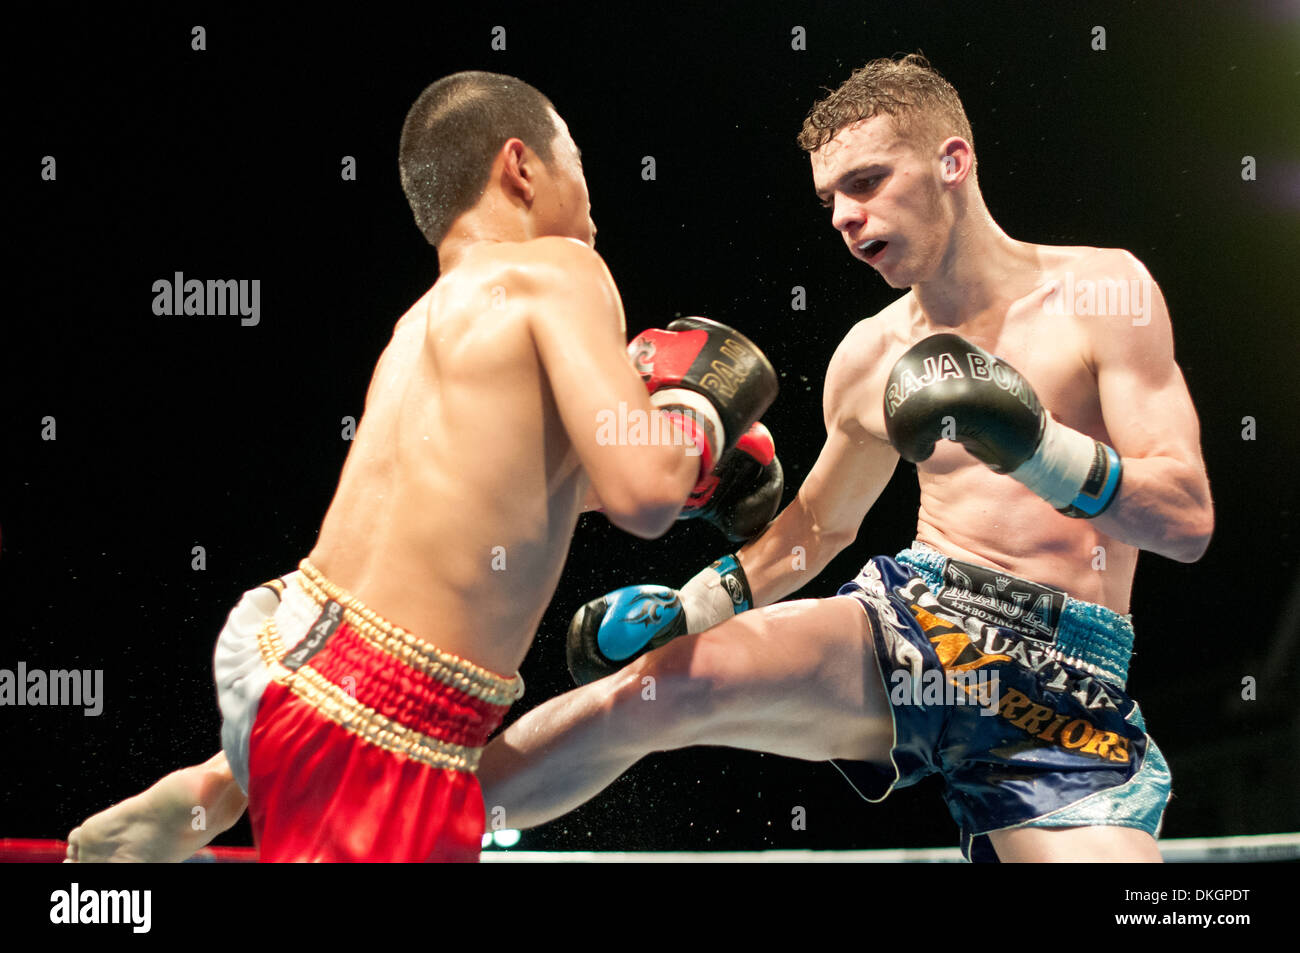 English Thai boxer coups de son adversaire dans un combat de boxe Thaï Banque D'Images